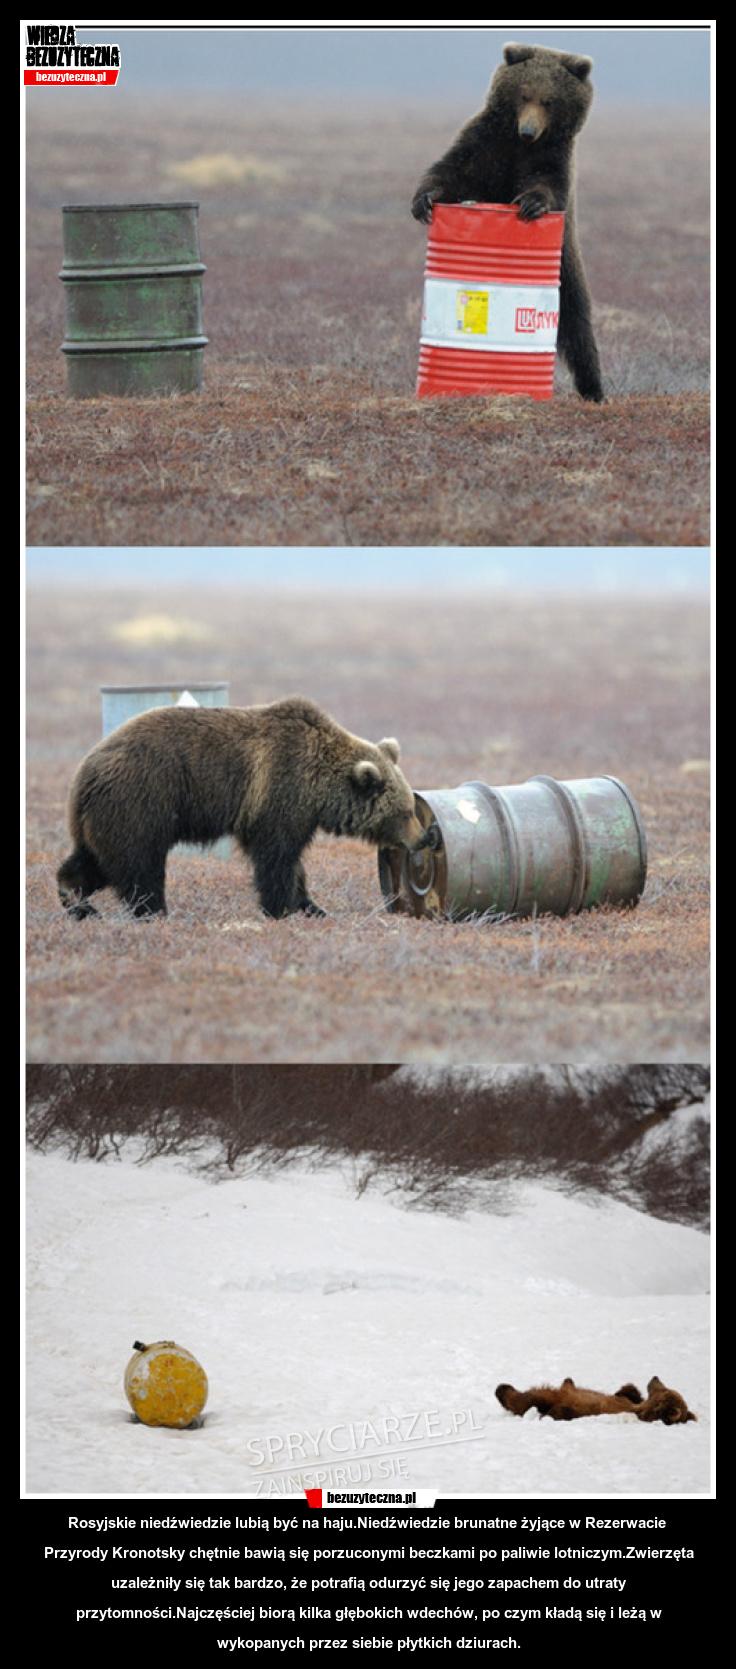 Rosyjskie niedźwiedzie lubią być na haju